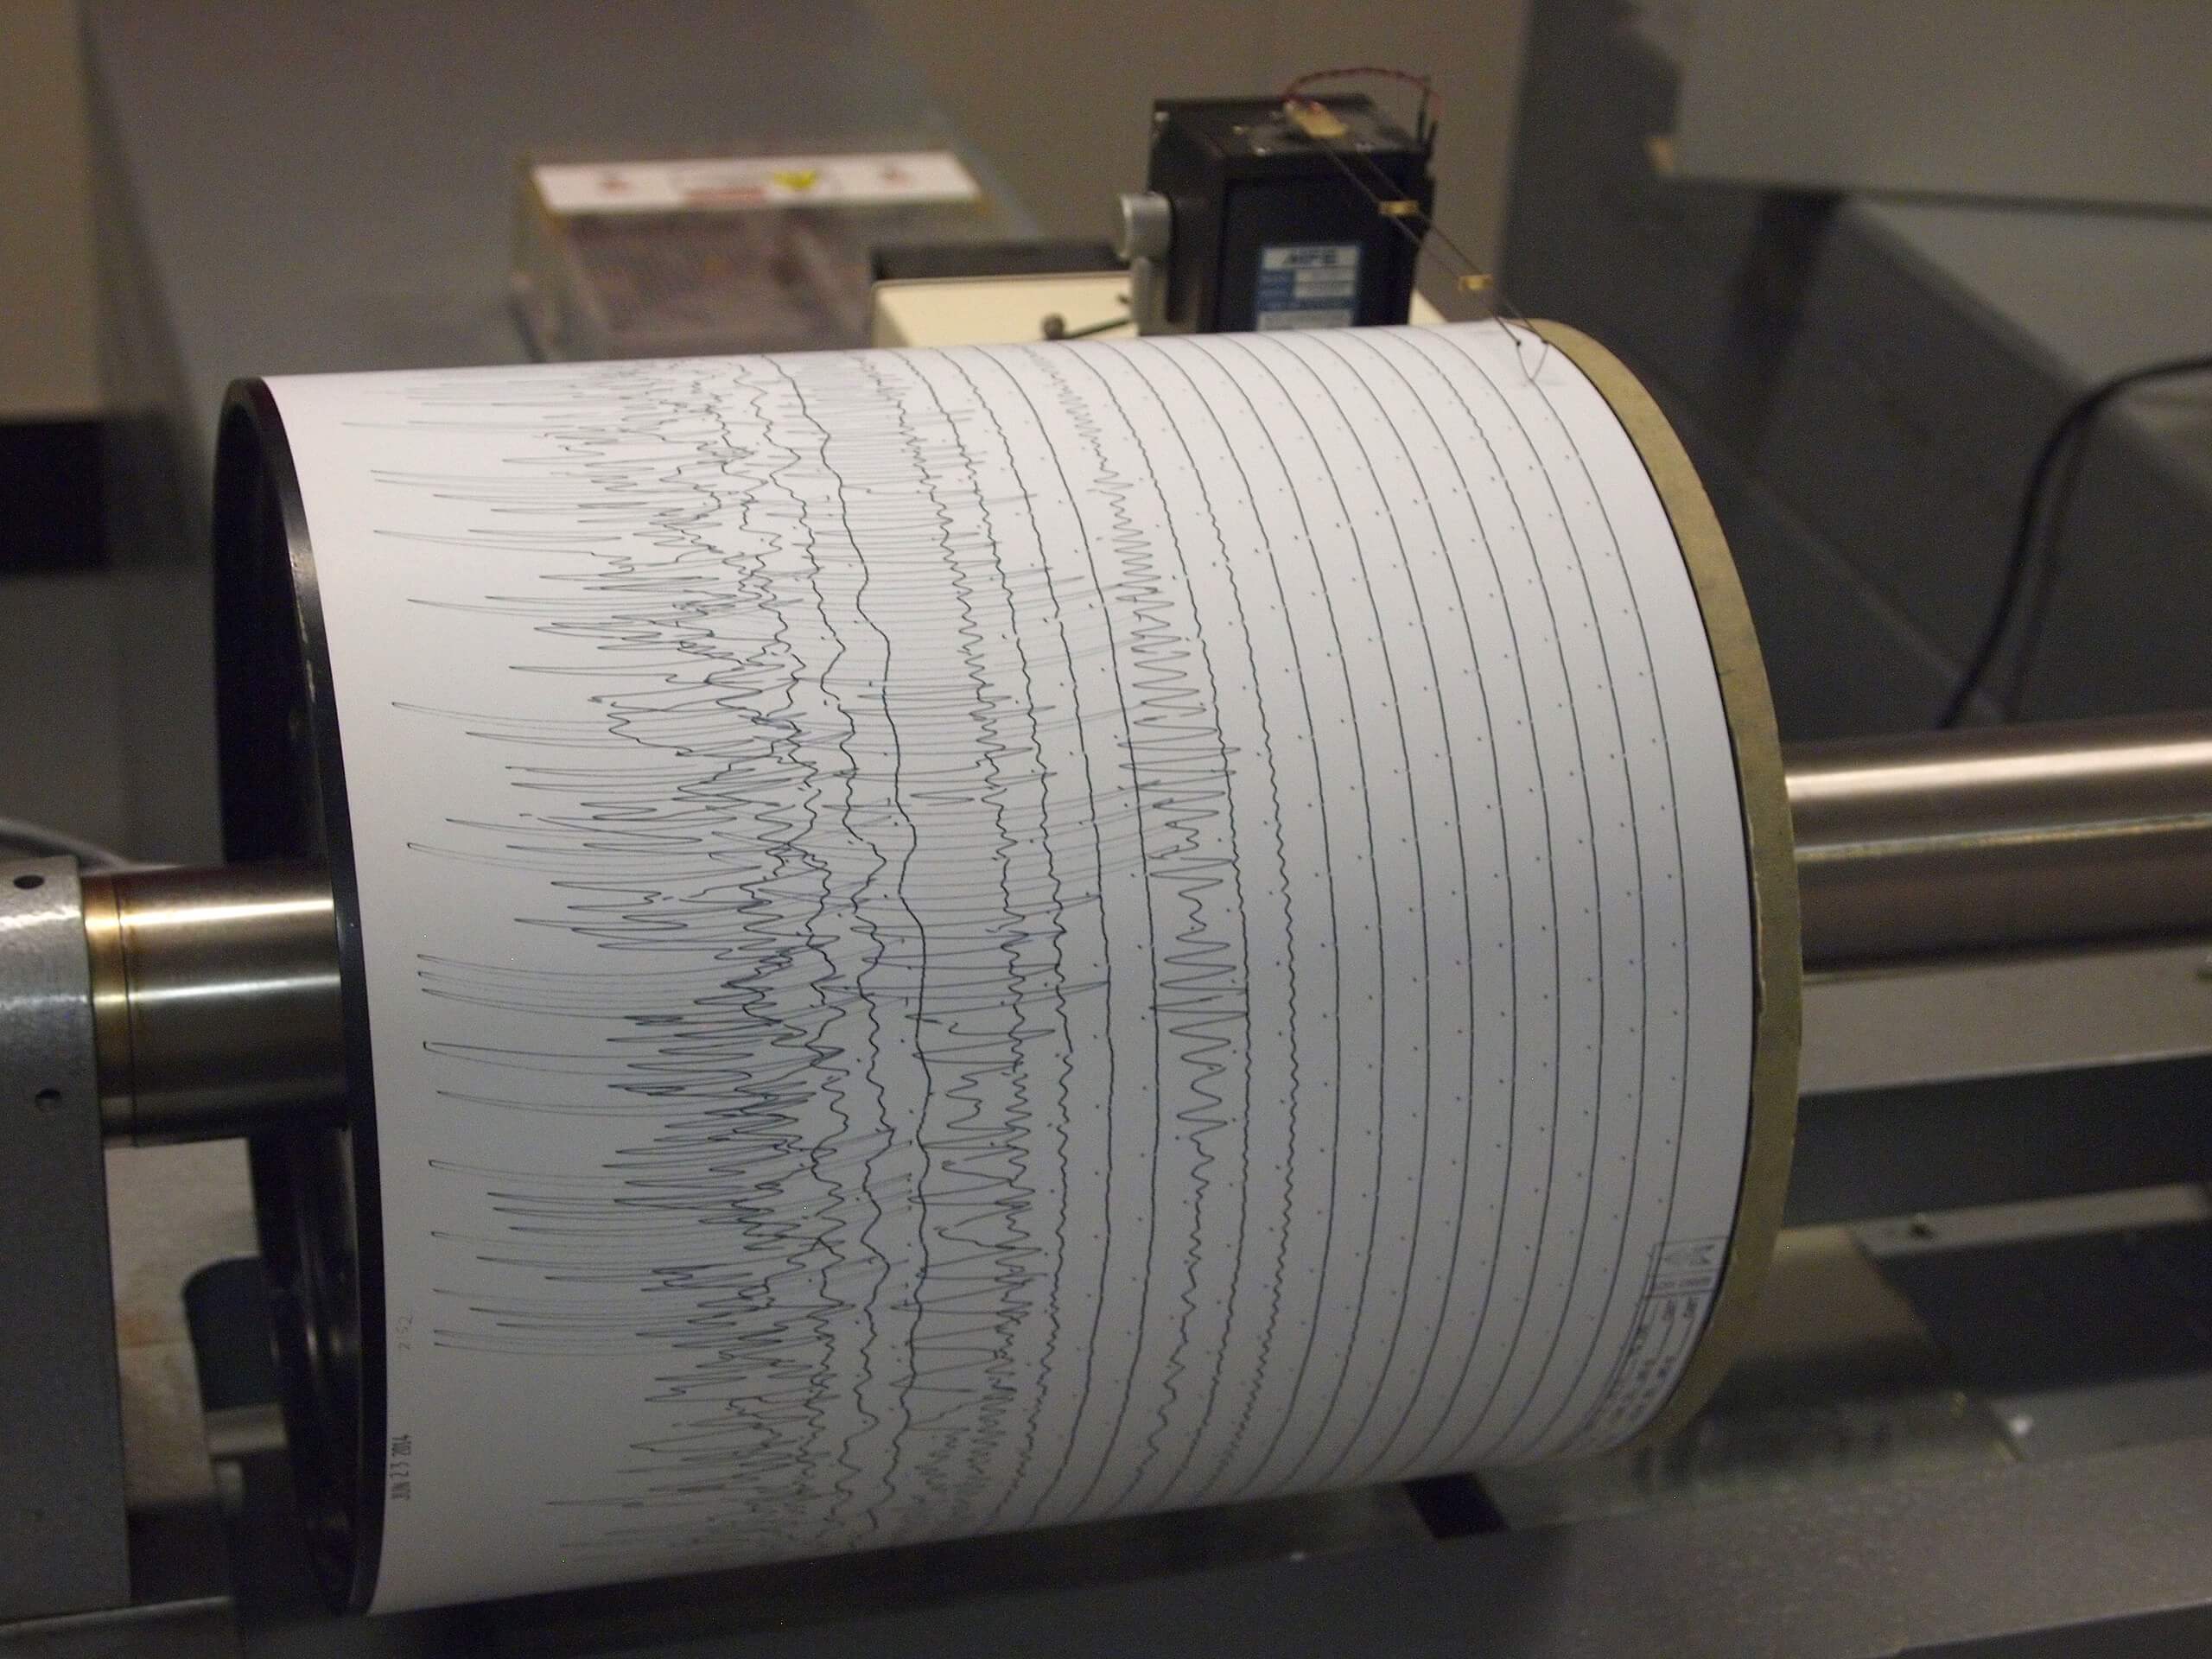 Fotografía de un sismómetro que registra ondas sísmicas como una serie de líneas en zig-zag.